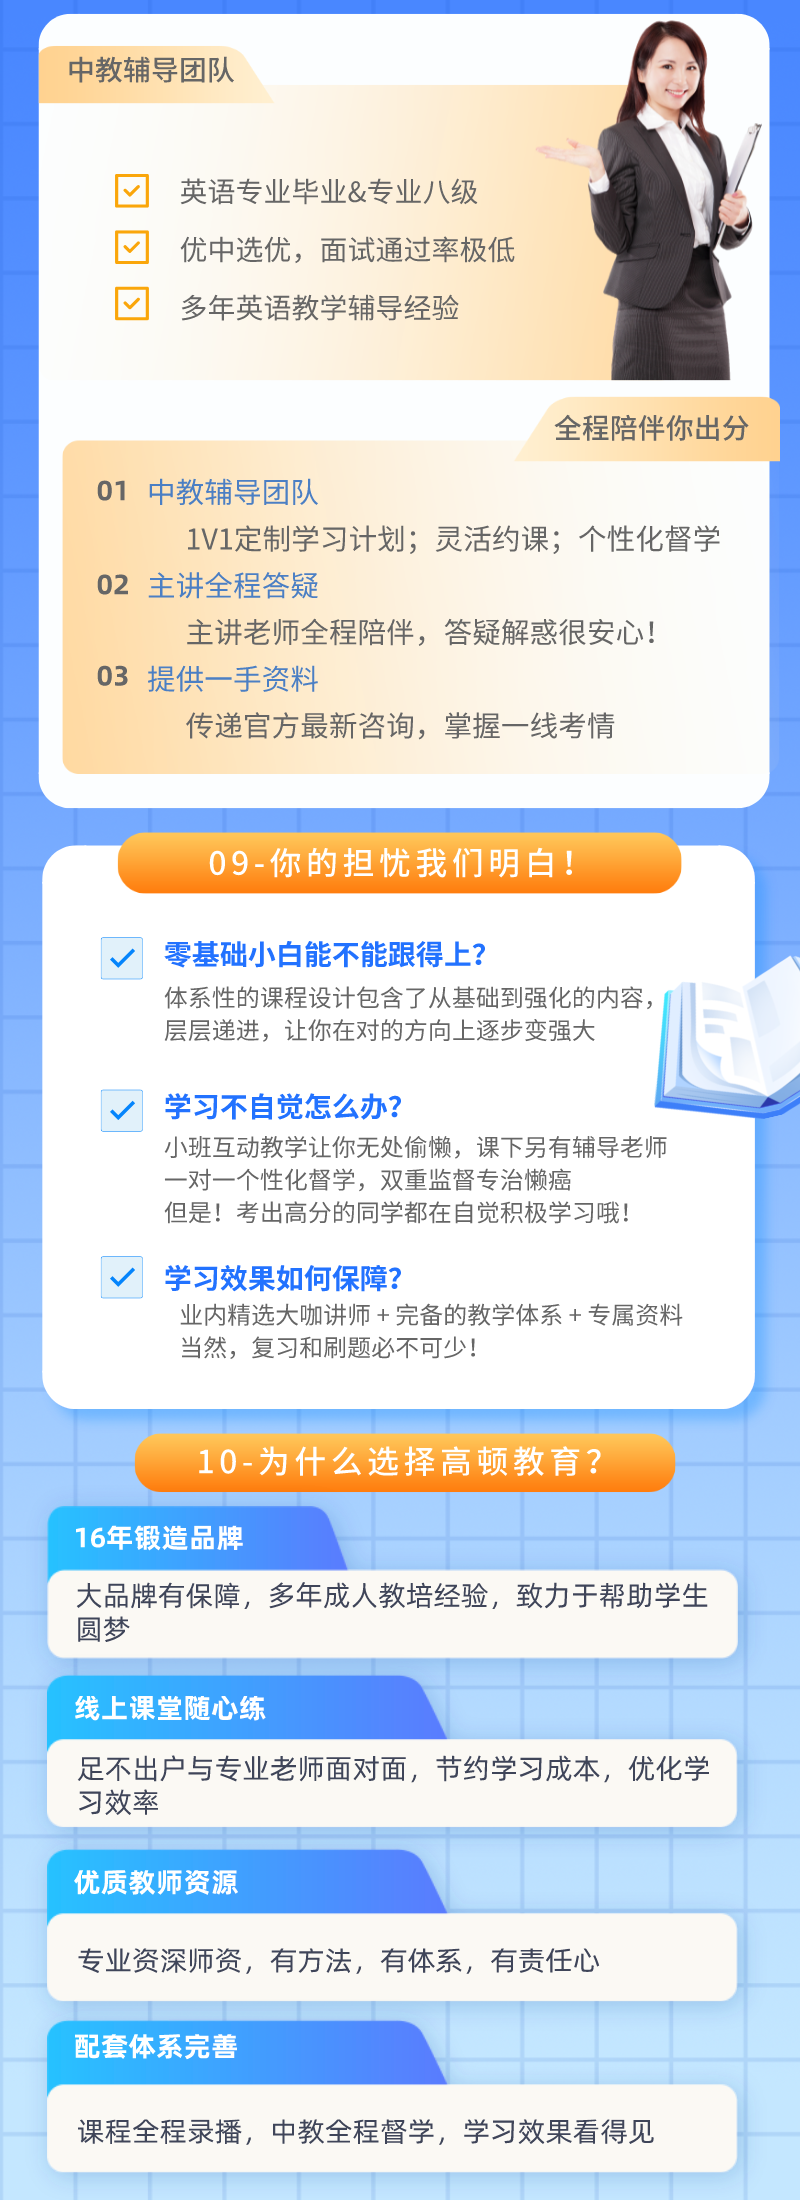 https://simg01.gaodunwangxiao.com/uploadfiles/product-center/202212/15/4fdb3_20221215145449.png